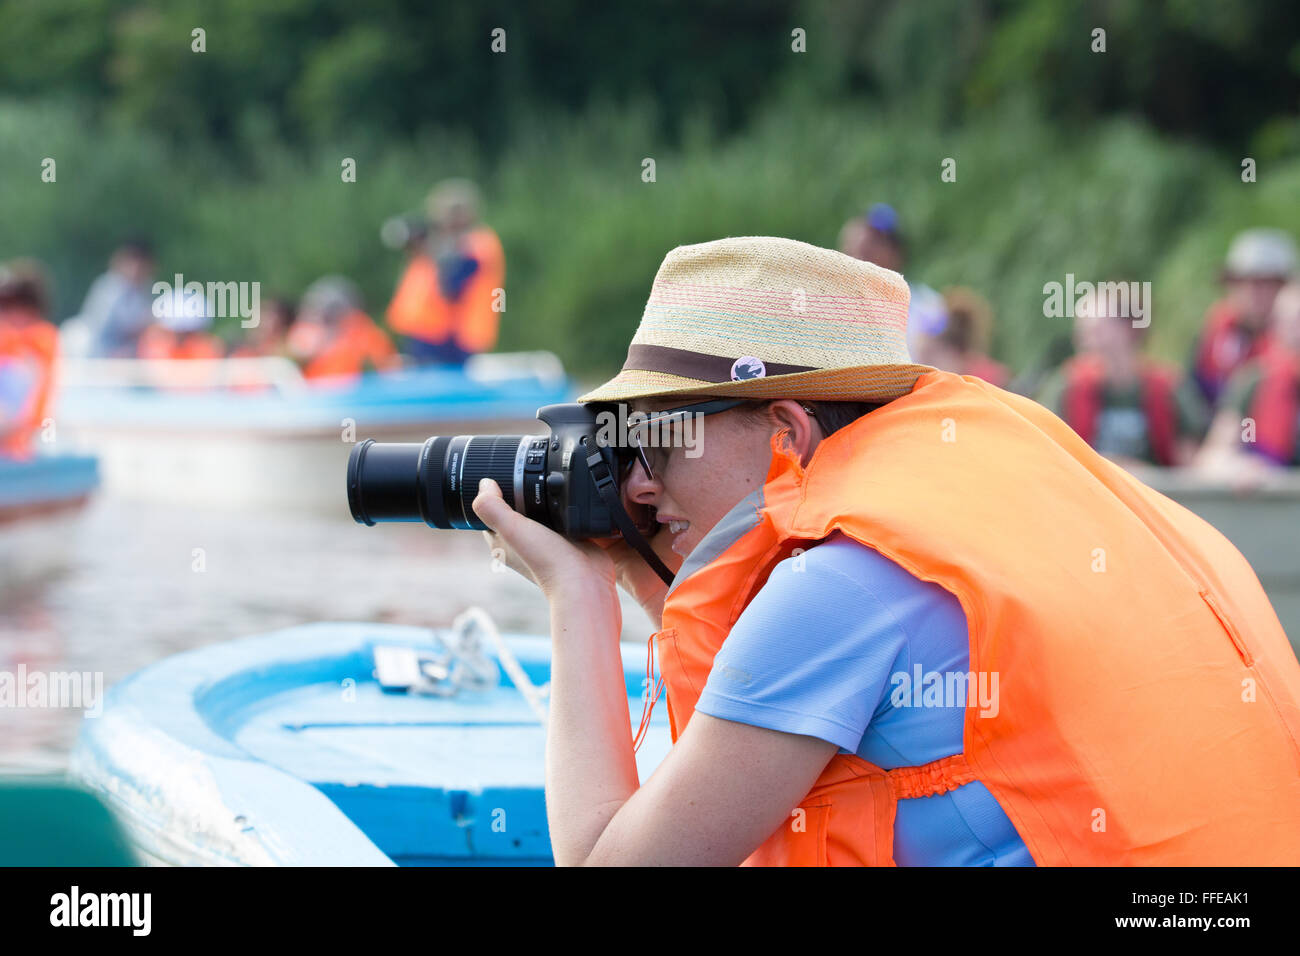 Touristen, die Wildbeobachtung von Booten auf dem Kinabatangan Fluss, Sabah, Malaysia Stockfoto